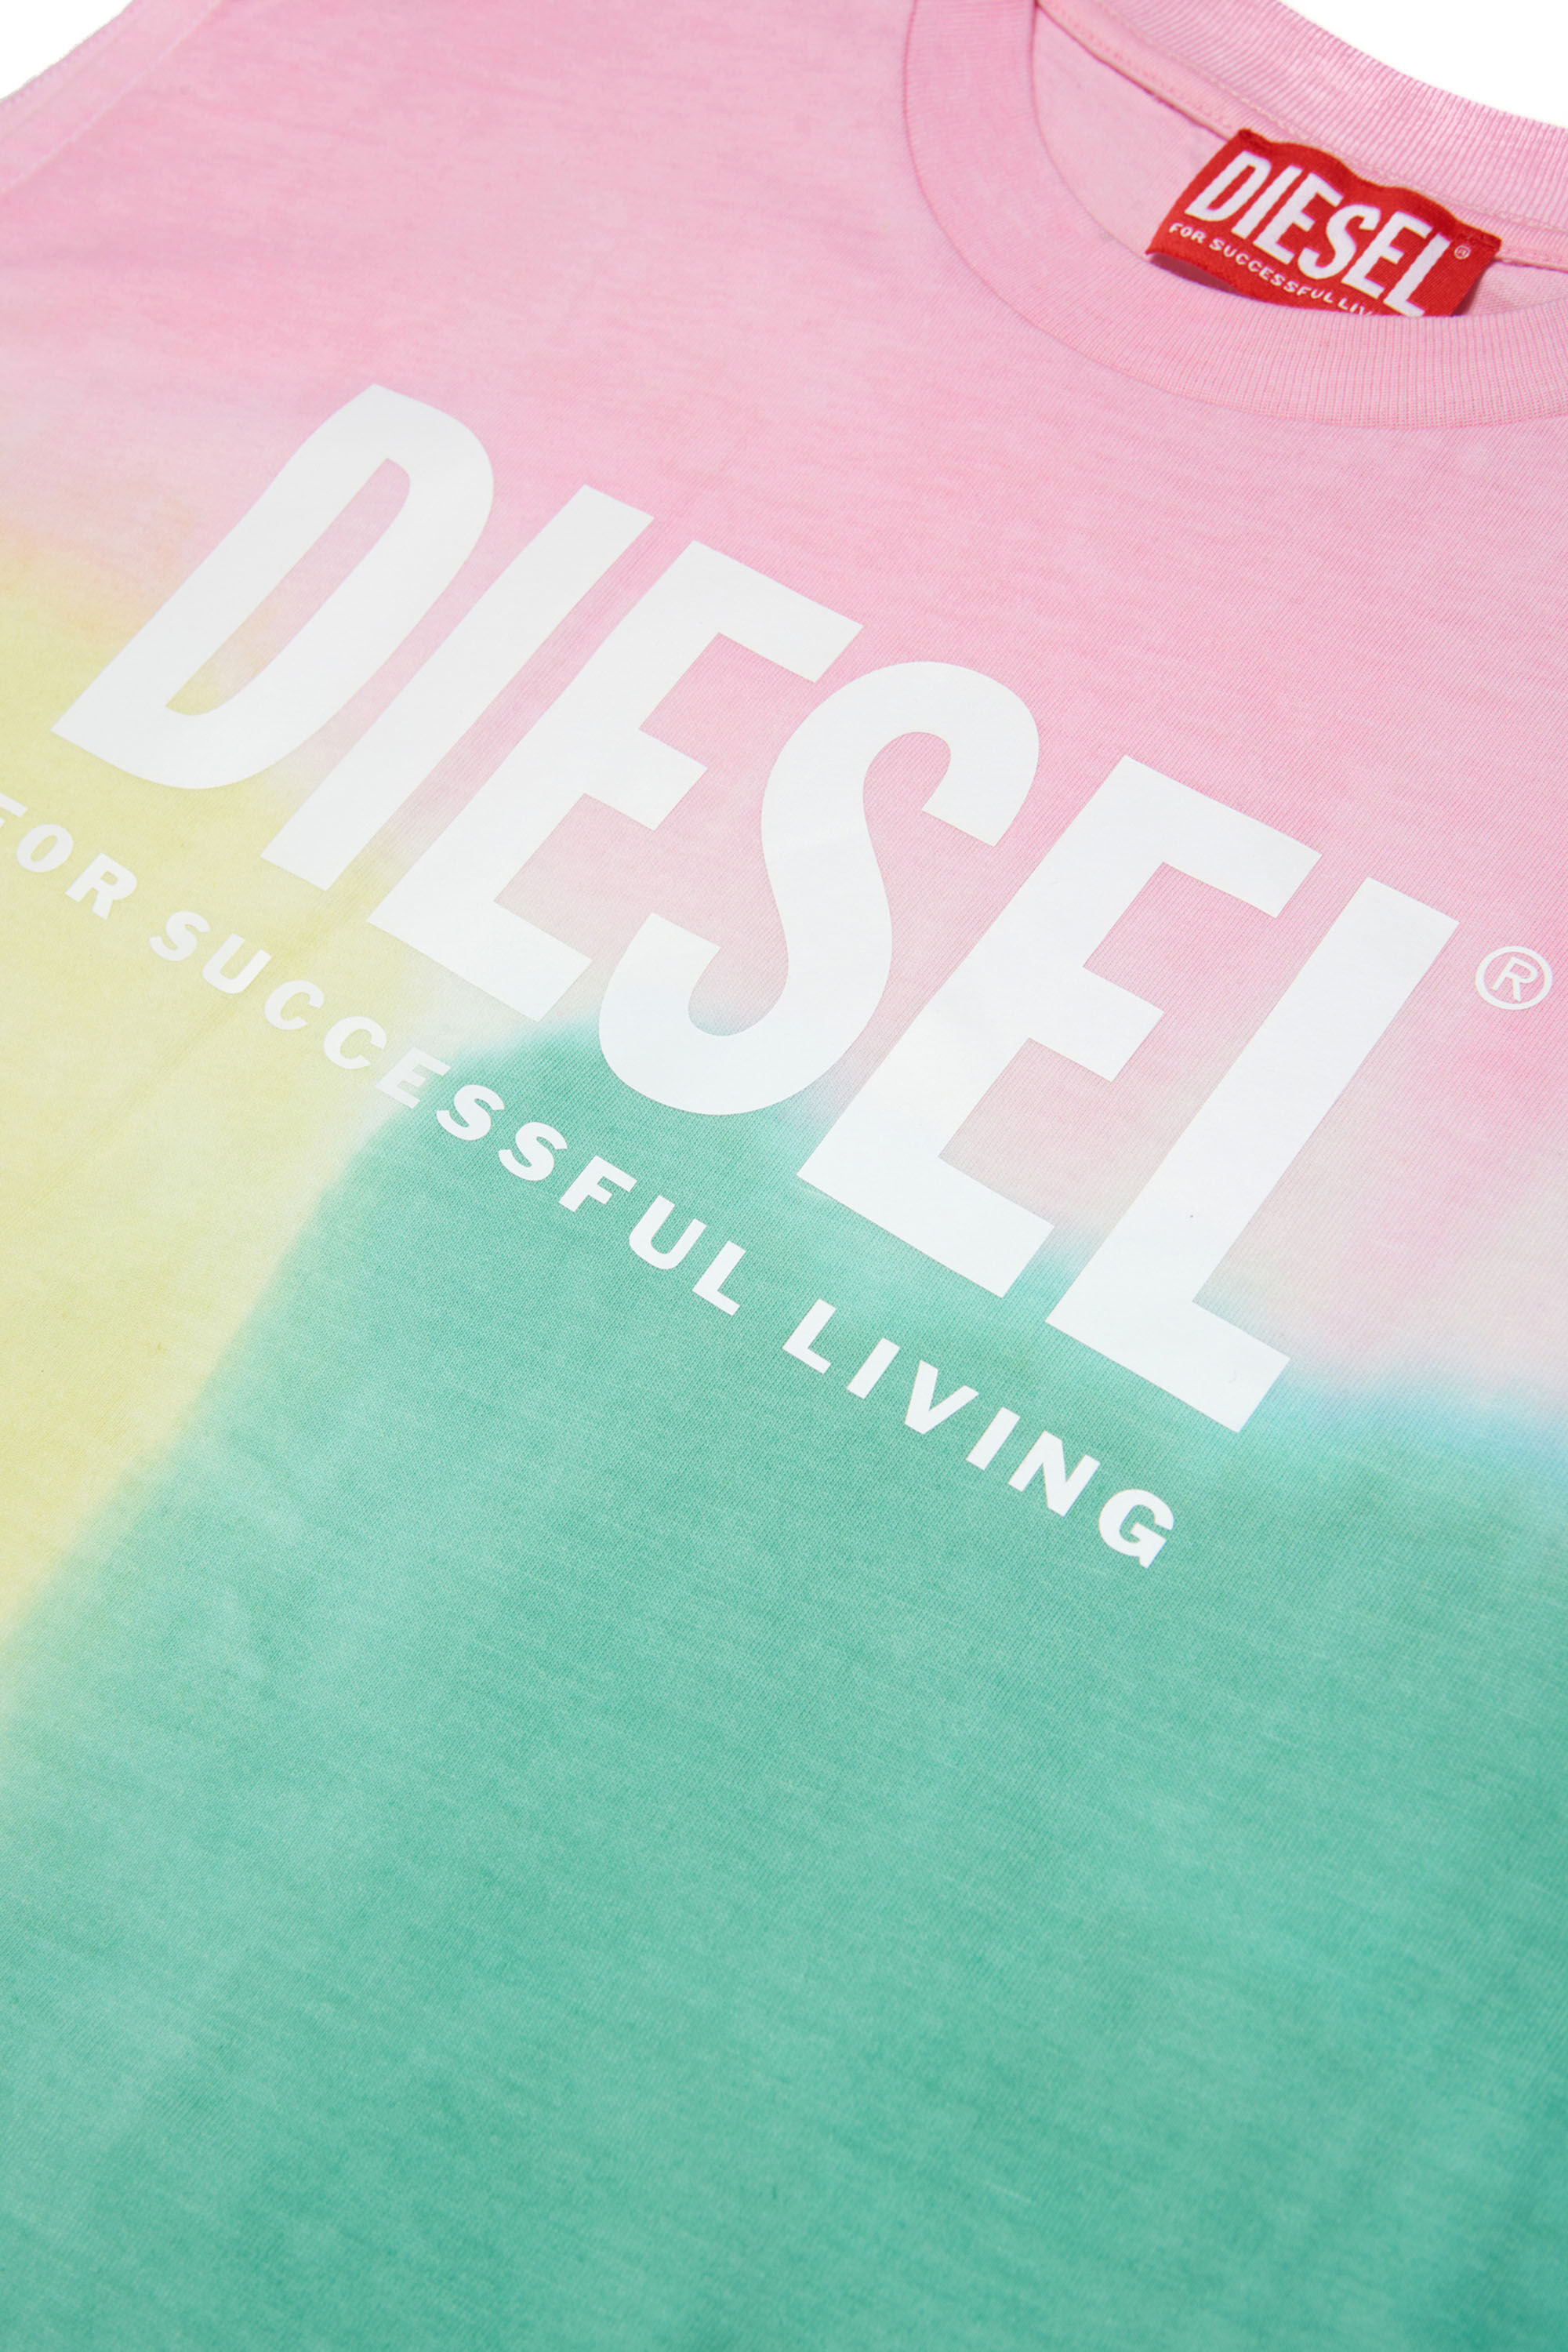 Diesel - DROLLETTE, Pink/Green - Image 3